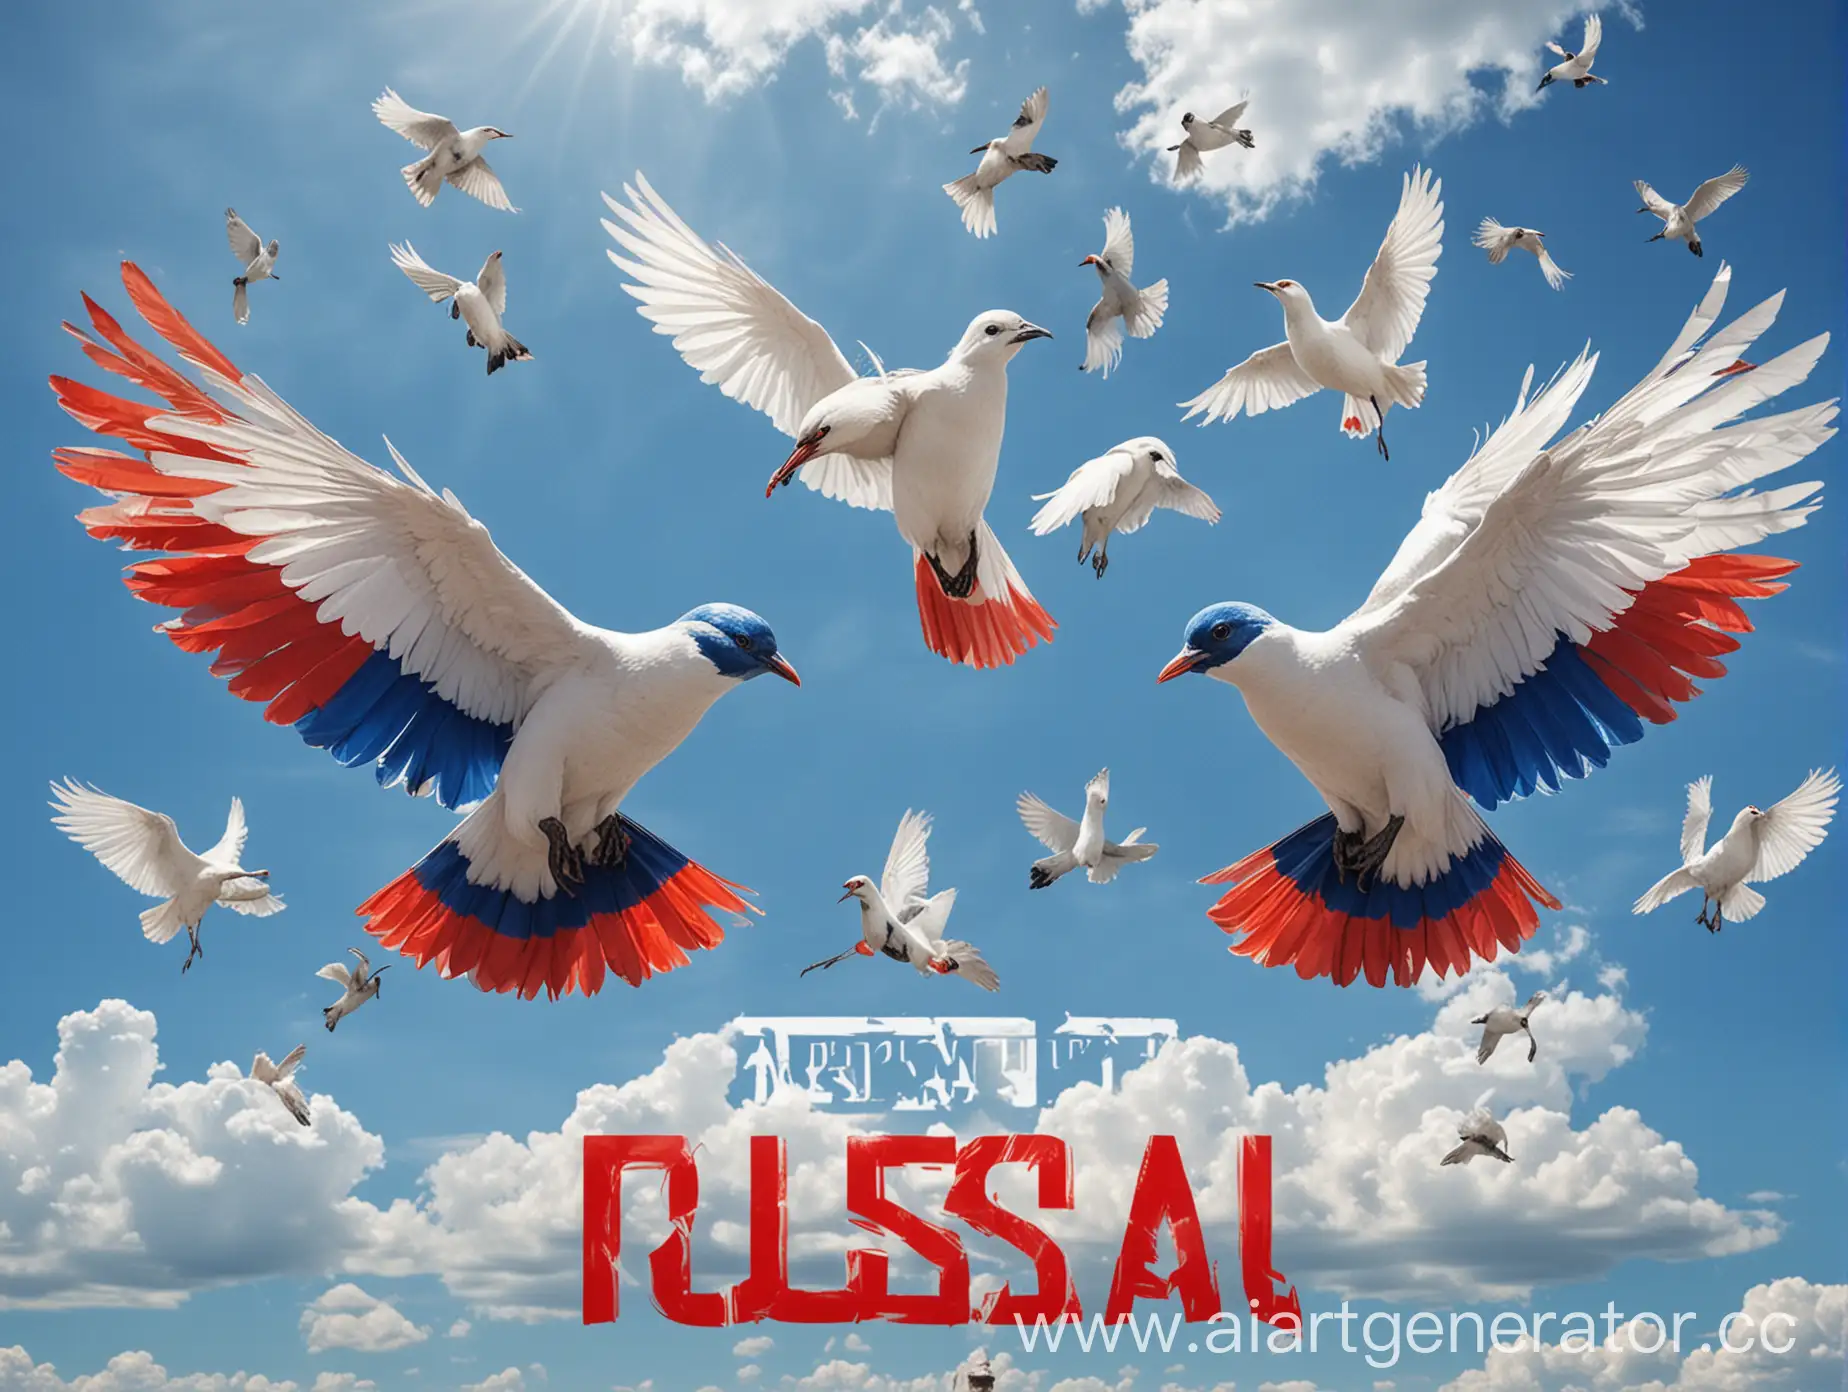 Постер ко Дню россии 12 июня, на фоне голубого неба, триколор и белые птицы